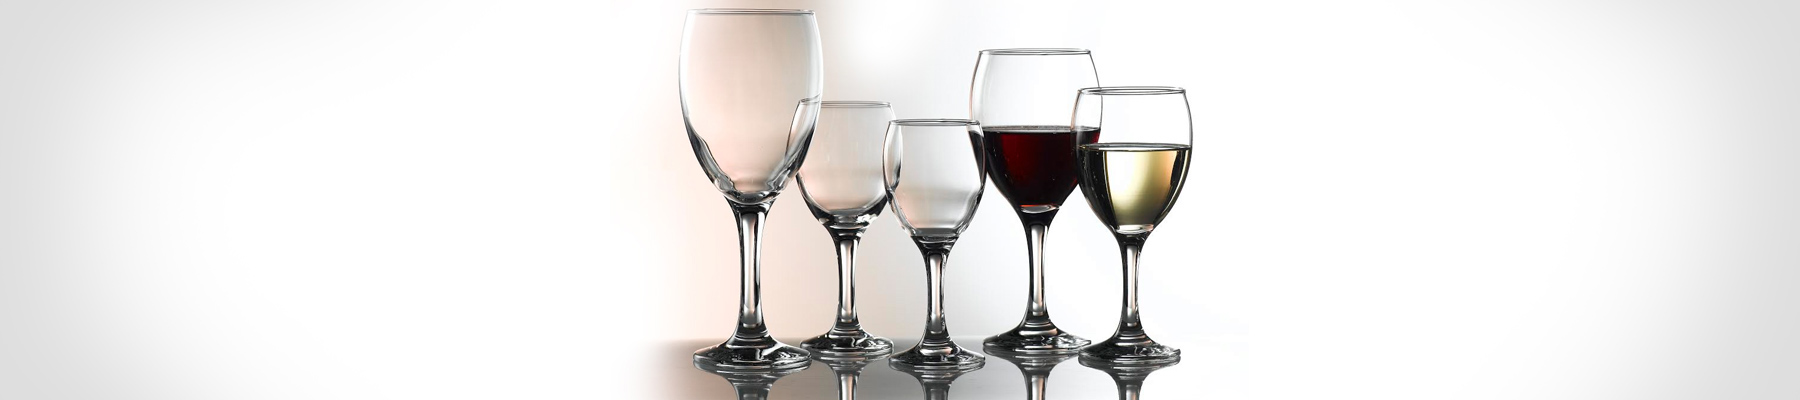 Empire Genware Wine Glasses